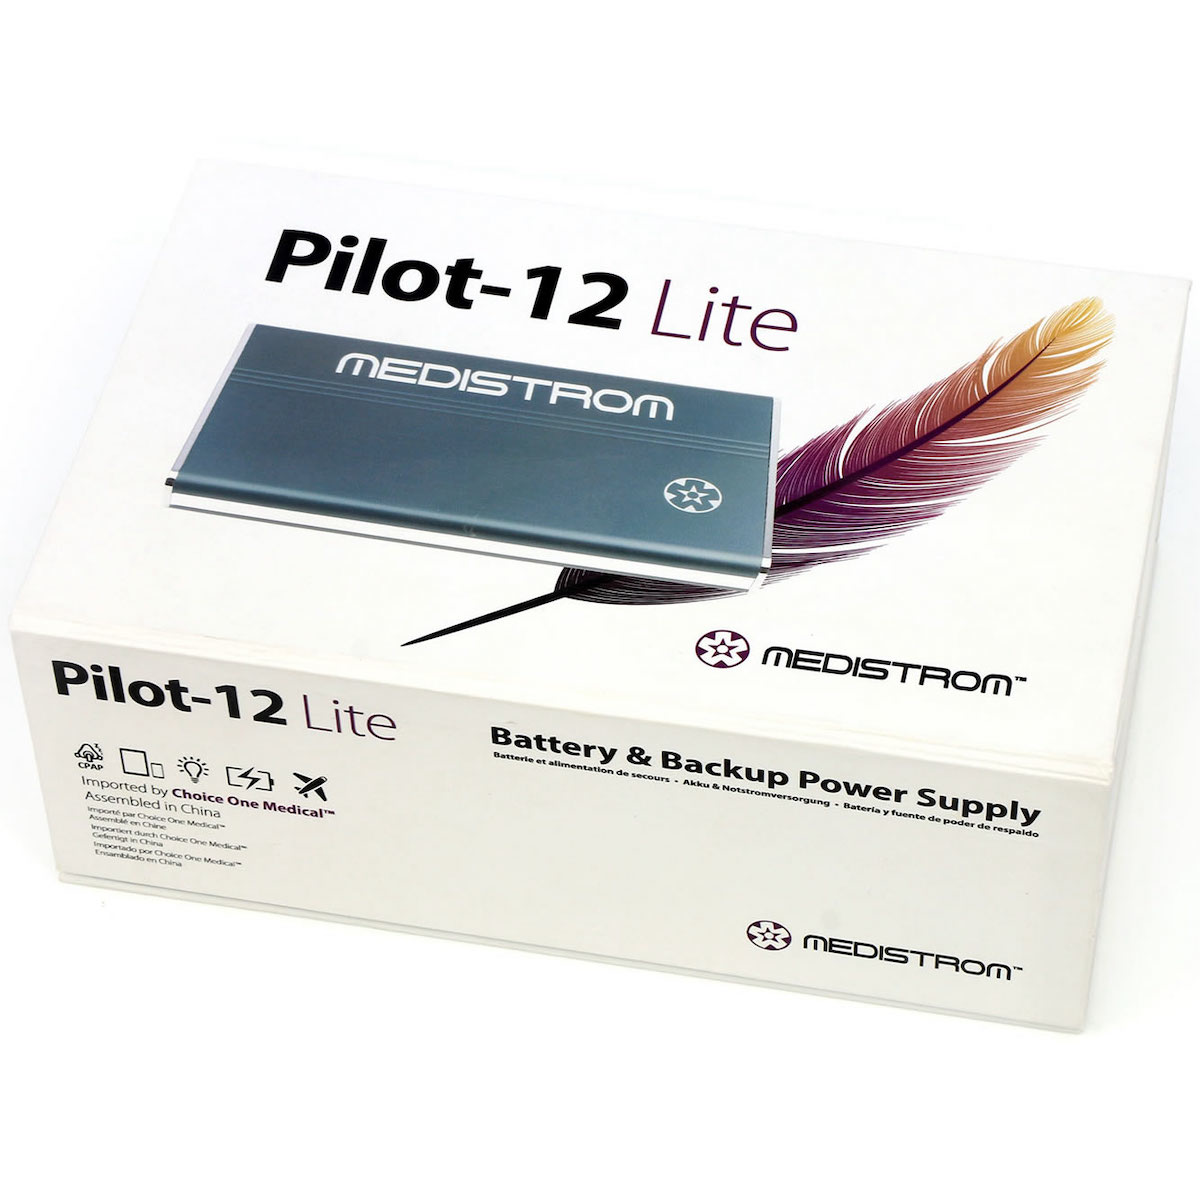 Pilot-12 Lite in the box